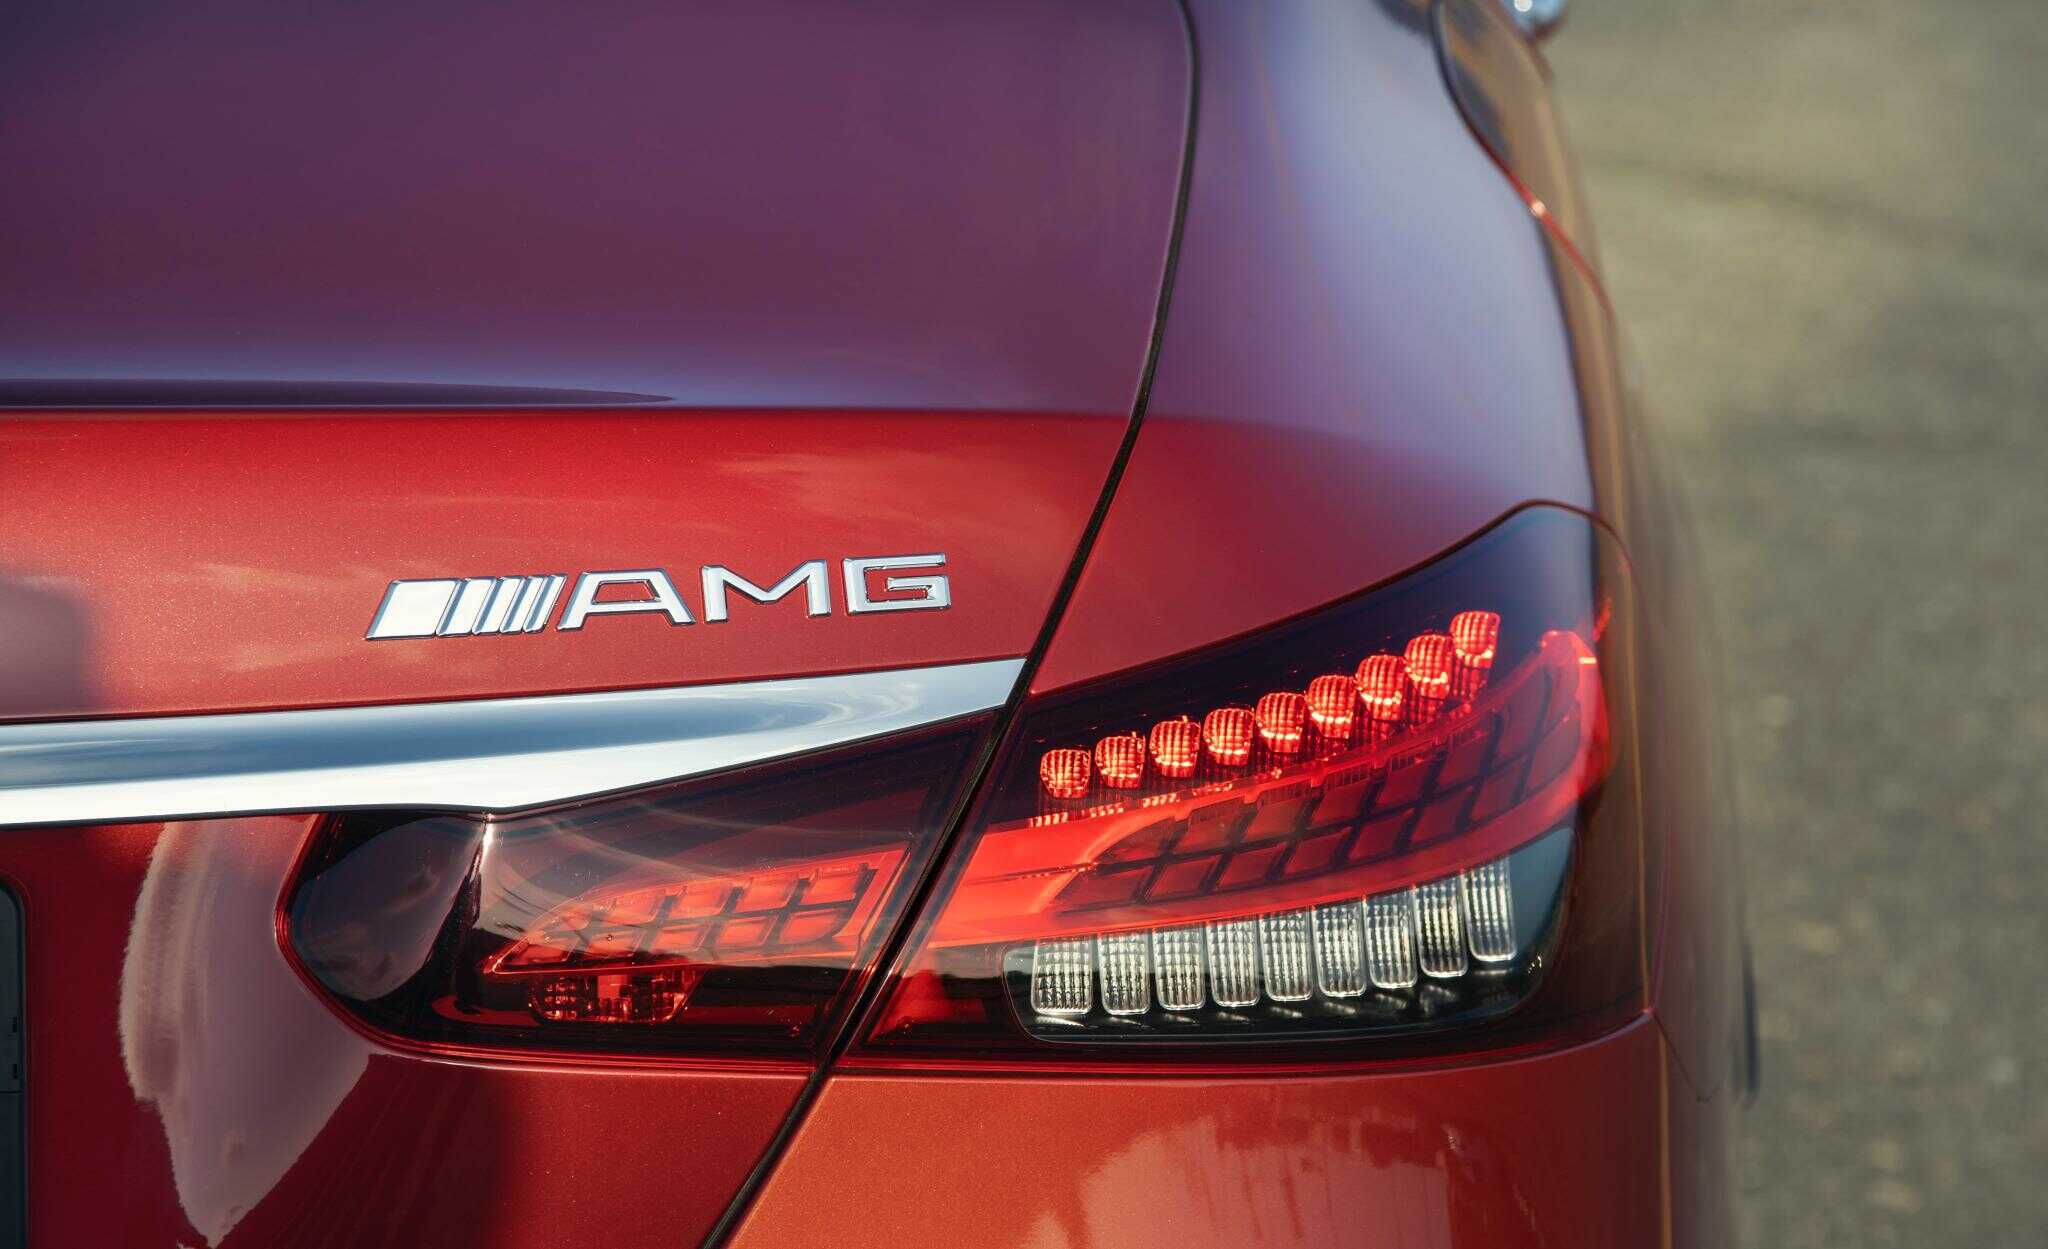 Cuối cùng là những tính năng an toàn được trang bị trên xe Mercedes E300 AMG 2021 cũng khá tương đồng so với những chiếc xe sang khác của hãng. Một vài tính năng có thể kể đến như : Chức năng cảnh báo mất tập trung ATTENTION ASSIST, hệ thống tự động bảo vệ PRE-SAFE®, hệ thống chống bó cứng phanh ABS; Hỗ trợ lực phanh khẩn cấp BAS; Chống trượt khi tăng tốc ASR; Ổn định thân xe điện tử ESP và hỗ trợ ổn định xe khi gió thổi ngang, hệ thống phanh ADAPTIVE với chức năng hỗ trợ dừng xe (HOLD) và hỗ trợ khởi hành ngang dốc (Hill-Start Assist), Đèn phanh Adaptive nhấp nháy khi phanh gấp,Túi khí phía trước; túi khí bên hông phía trước; túi khí cửa sổ, túi khí cho đầu gối người lái…. Mercedes E300 AMG 2021 thực sự là “đứa con cưng” của hãng Mercedes khi được sở hữu đầy đủ những yêu tố của một tiểu “S-Class” . Đây là chiếc xe hết sức phù hợp cho những doanh nhân trẻ thành đạt và cá tính muốn chứng minh sự thành công của bản thân bằng một chiếc xe tương đương giá trị của bản thân.